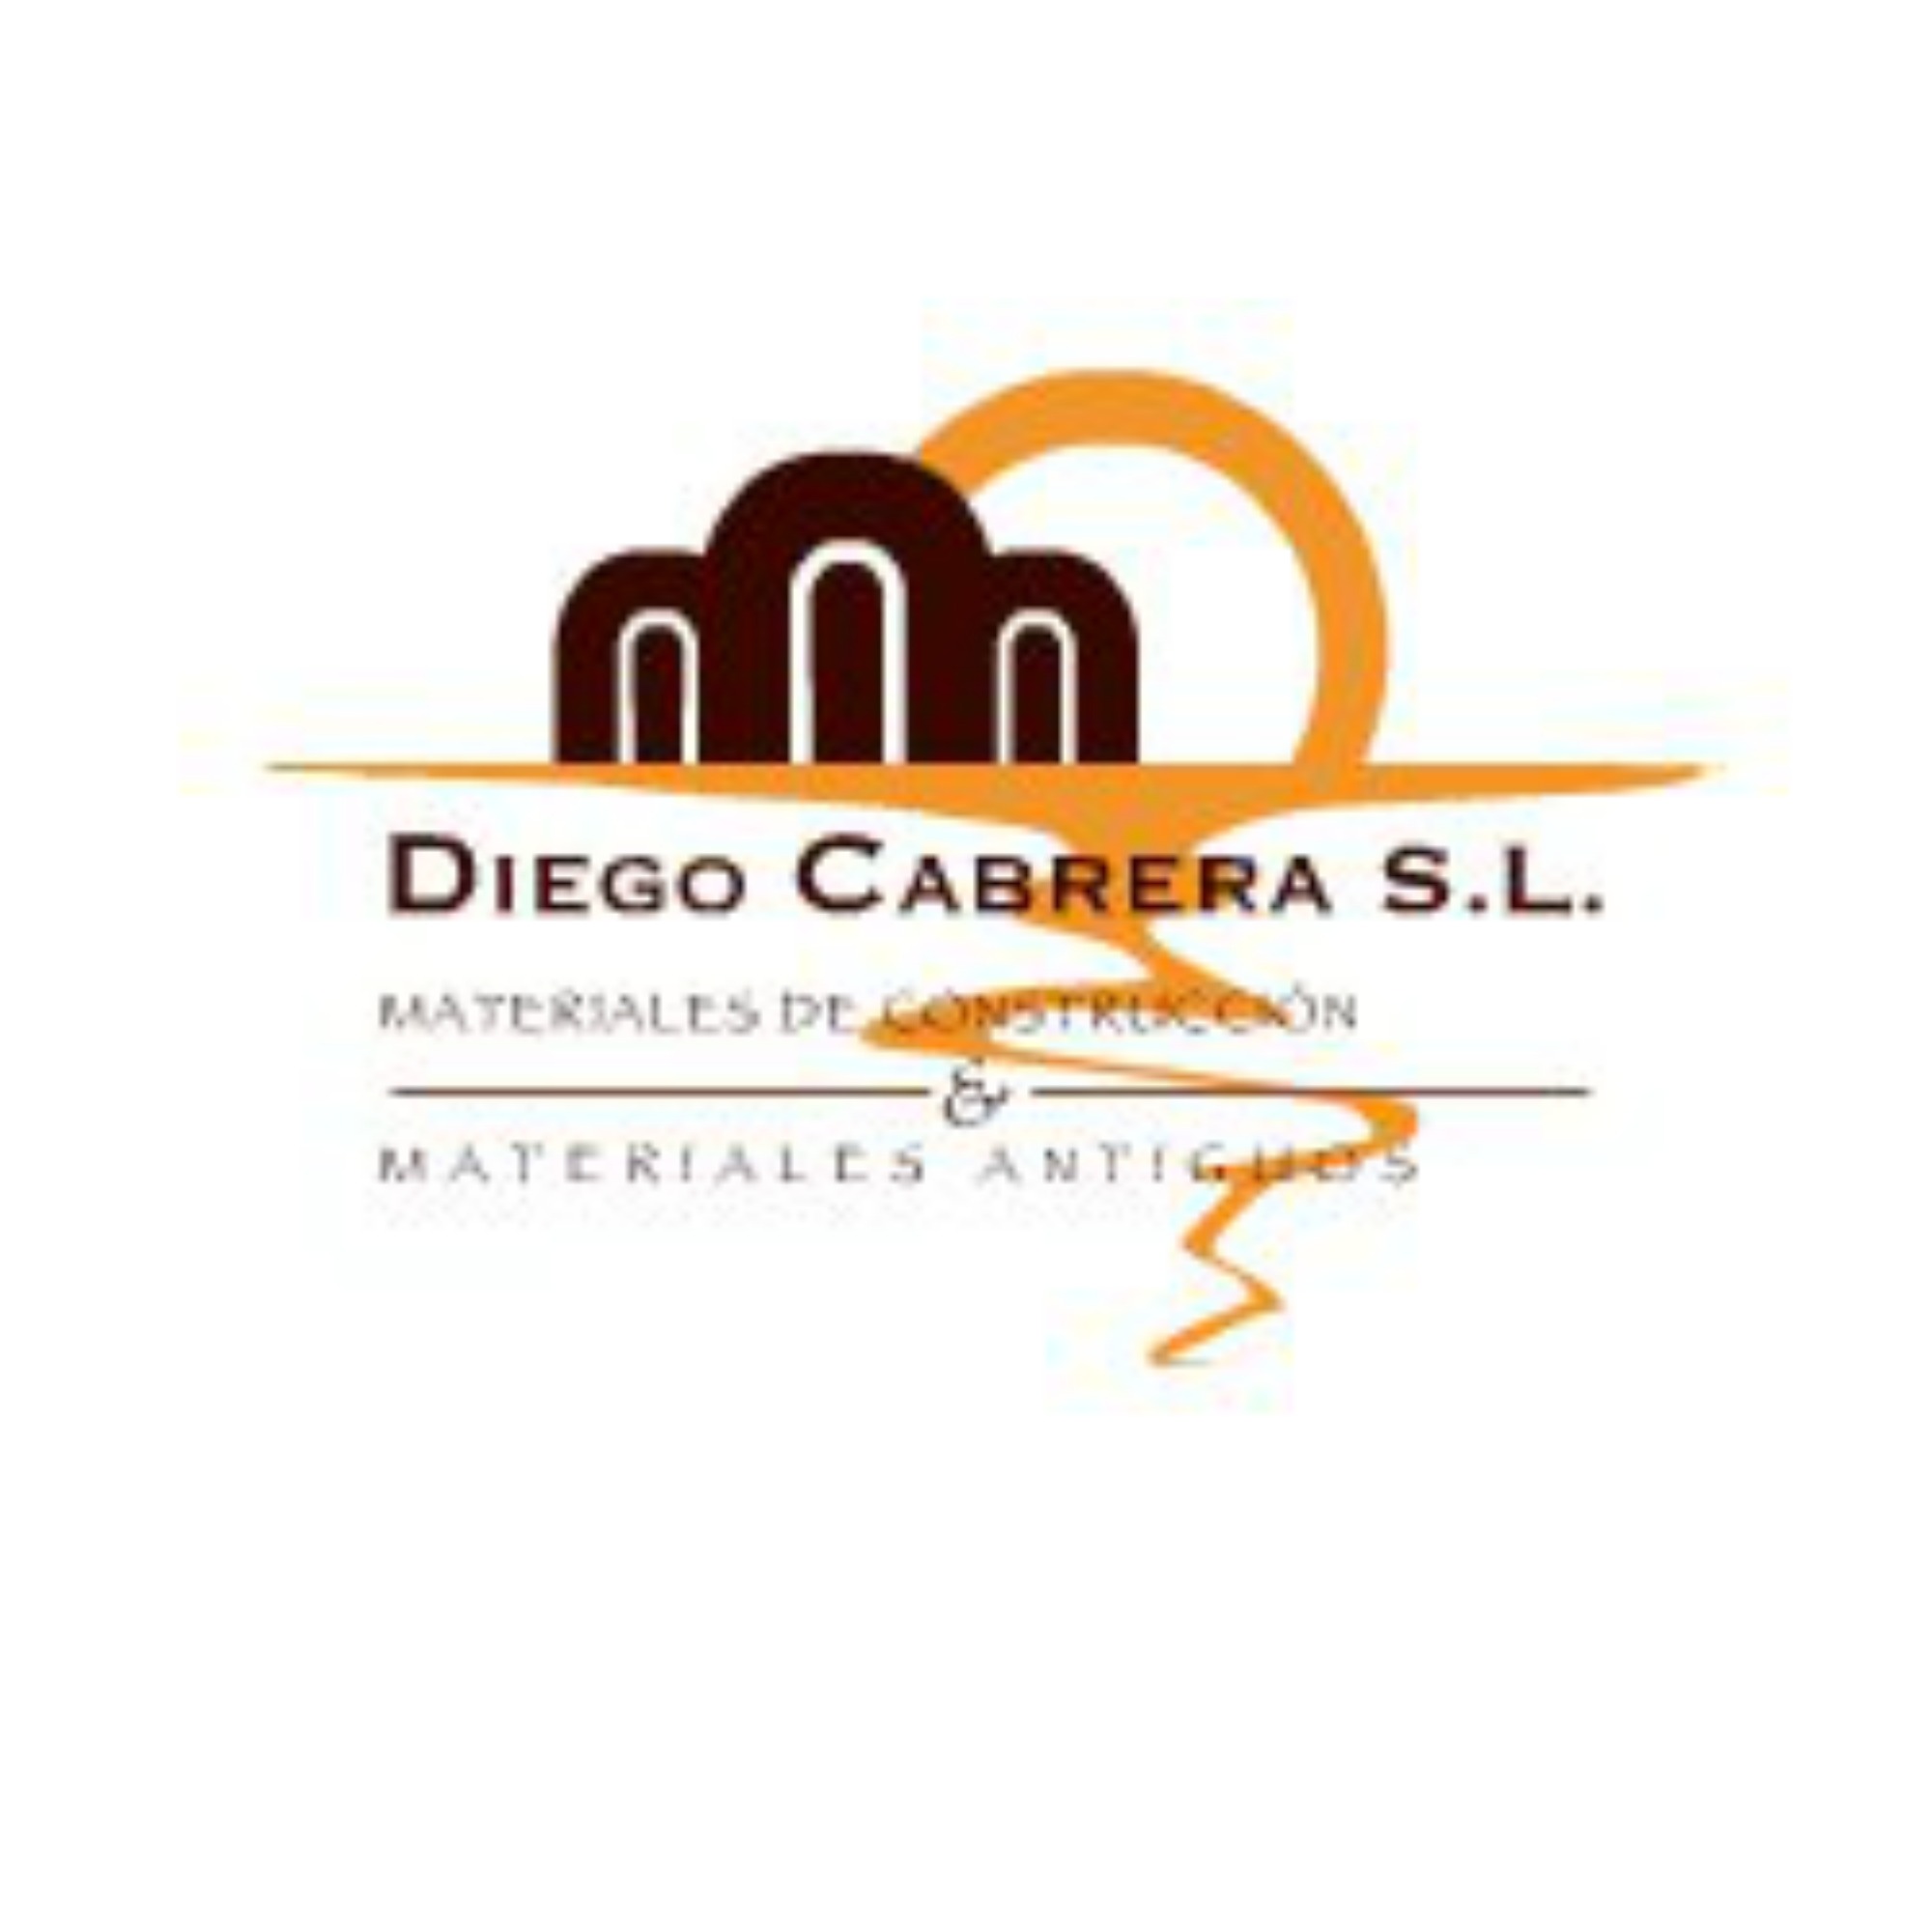 Materiales de construcción Diego Cabrera